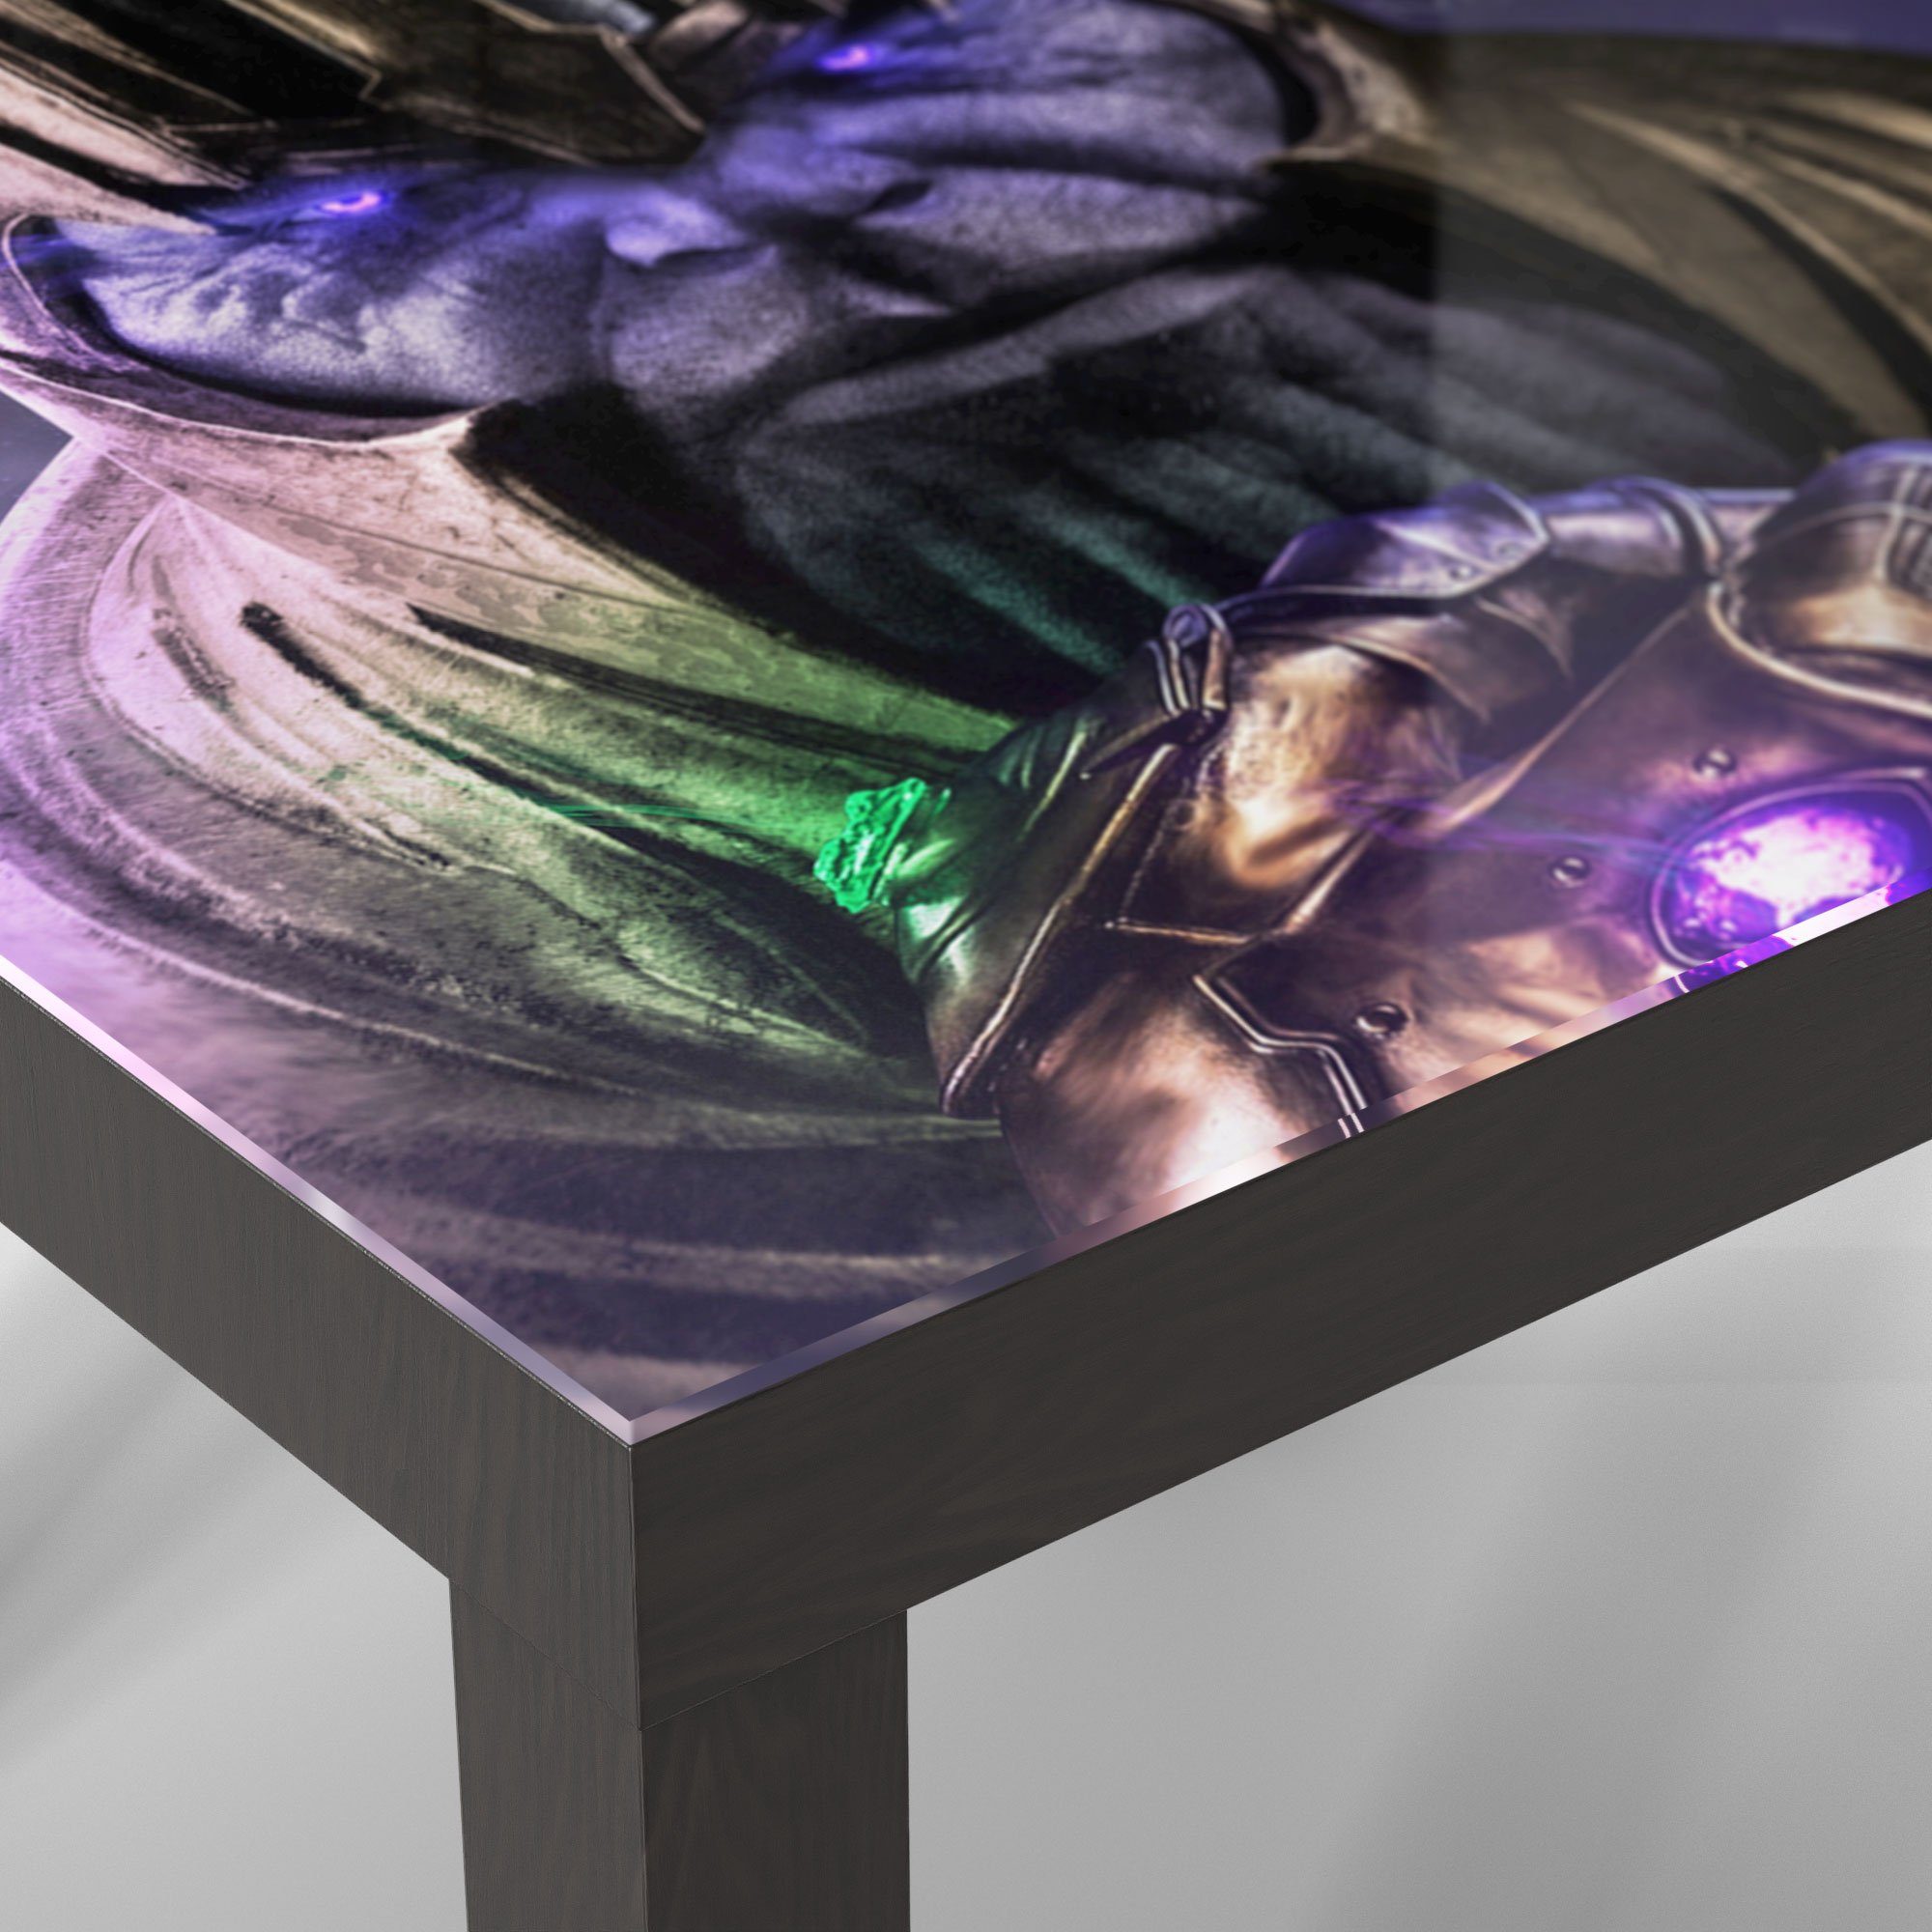 Glas DEQORI Glastisch 'Thanos Schwarz Nahem', Rüstung modern von Couchtisch Beistelltisch